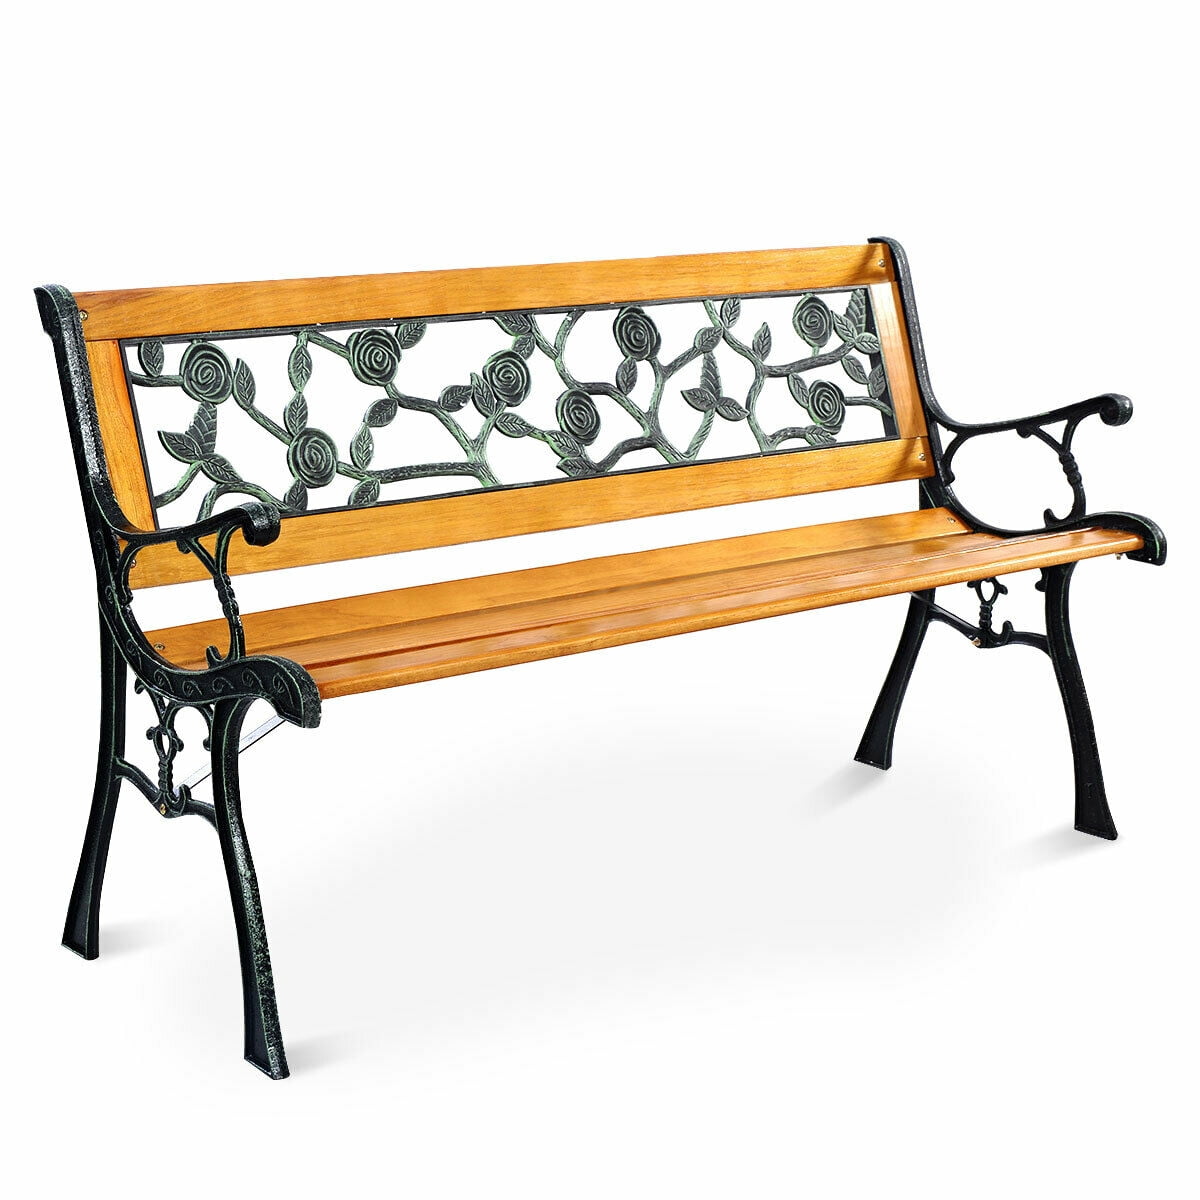 Patio Park Yard Garden Bench Porch Path Chair Outdoor Deck Steel Frame Furniture 